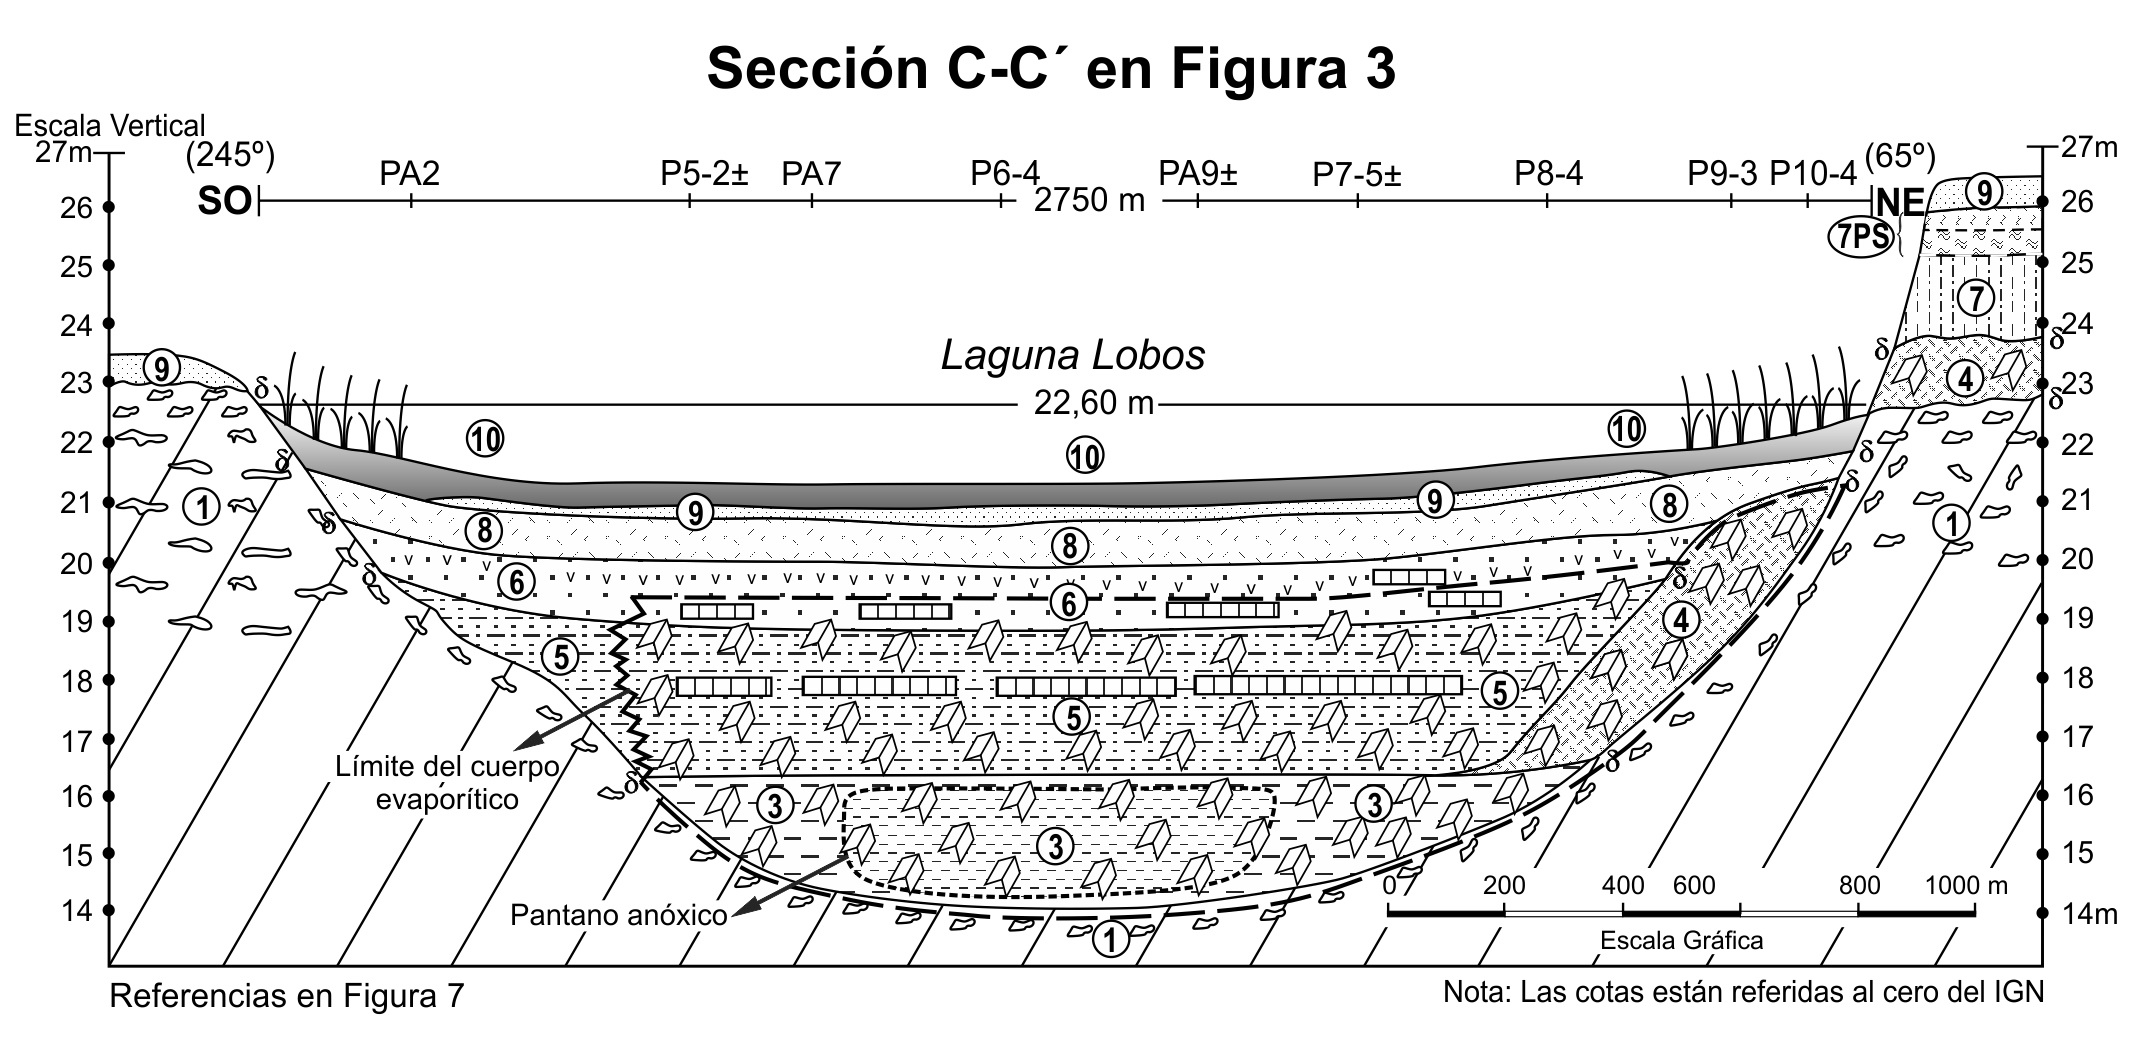  Perfil geológico SO-NE, según la sección C-C’
de la Figura 3. Detalles estratigráficos en la Figura 7.